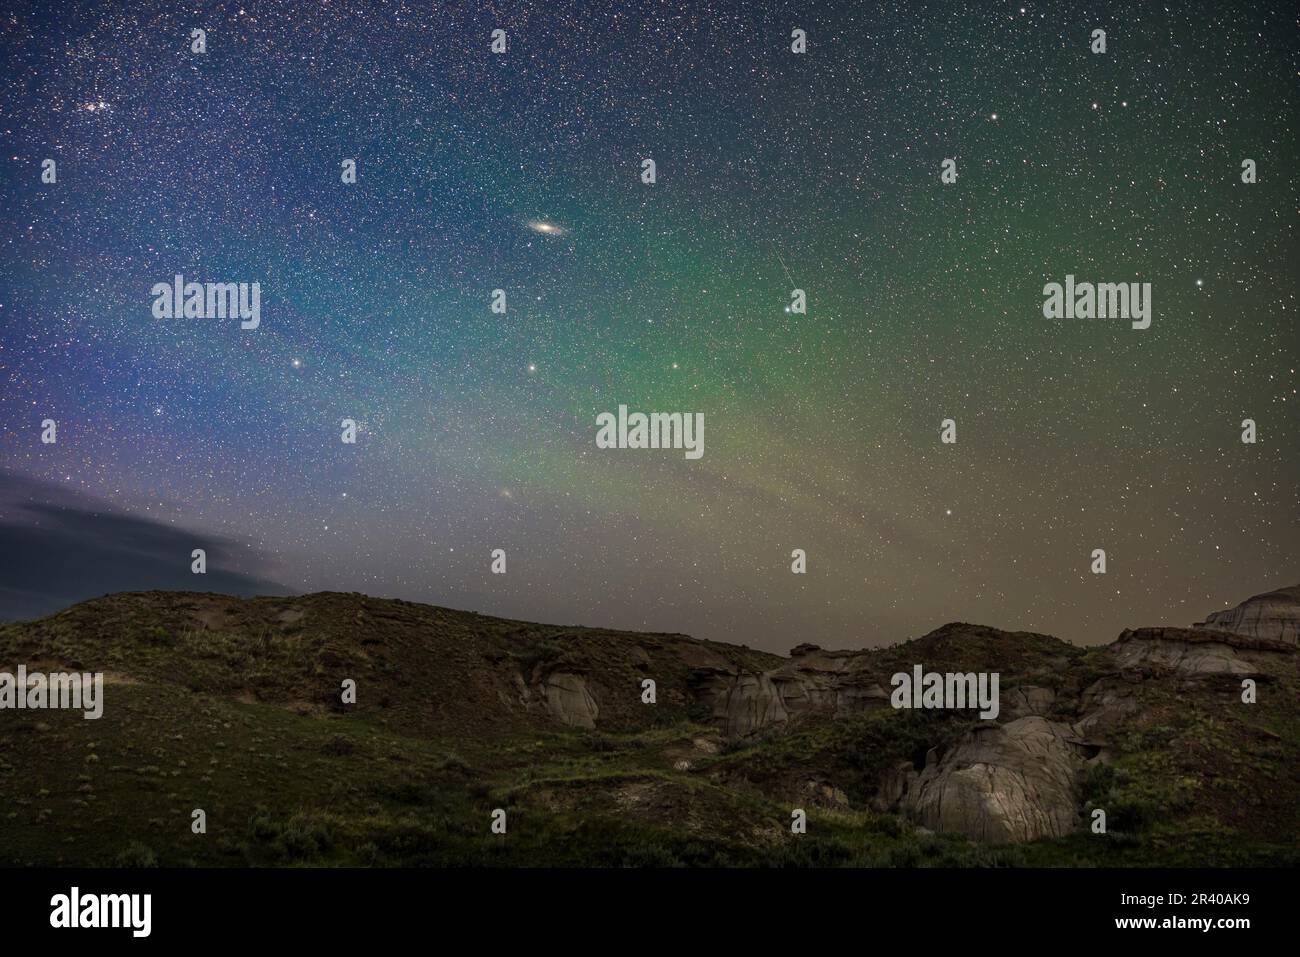 Im Dinosaur Provincial Park in Alberta, Kanada, wird der Himmel von Airglow getönt, während die Konstellation Andromeda aufsteigt. Stockfoto